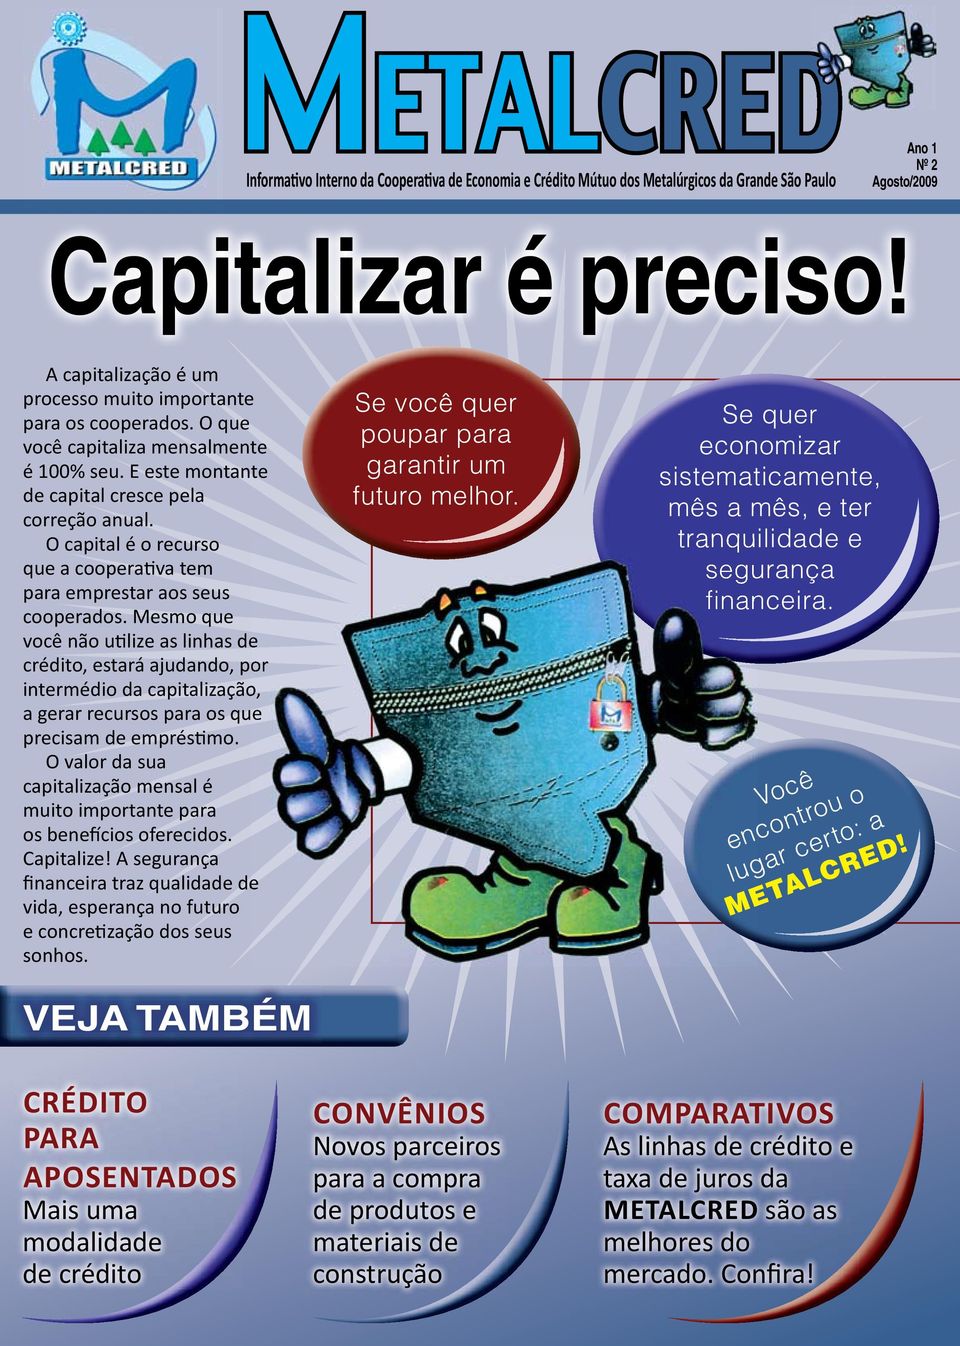 O capital é o recurso que a cooperativa tem para emprestar aos seus cooperados.